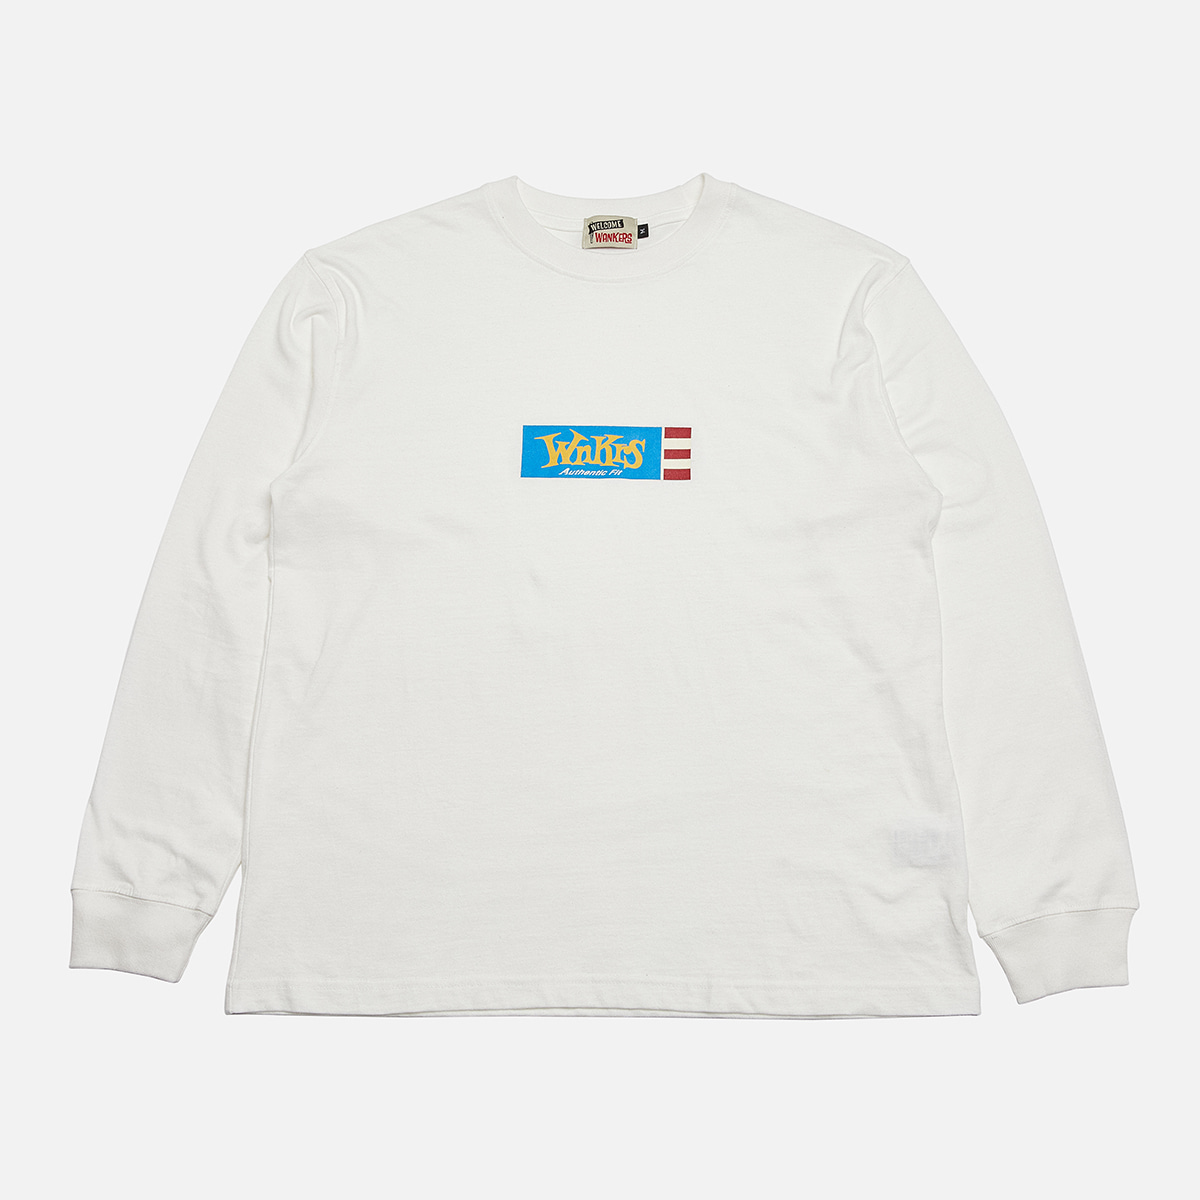 Revell L-shirts[white]